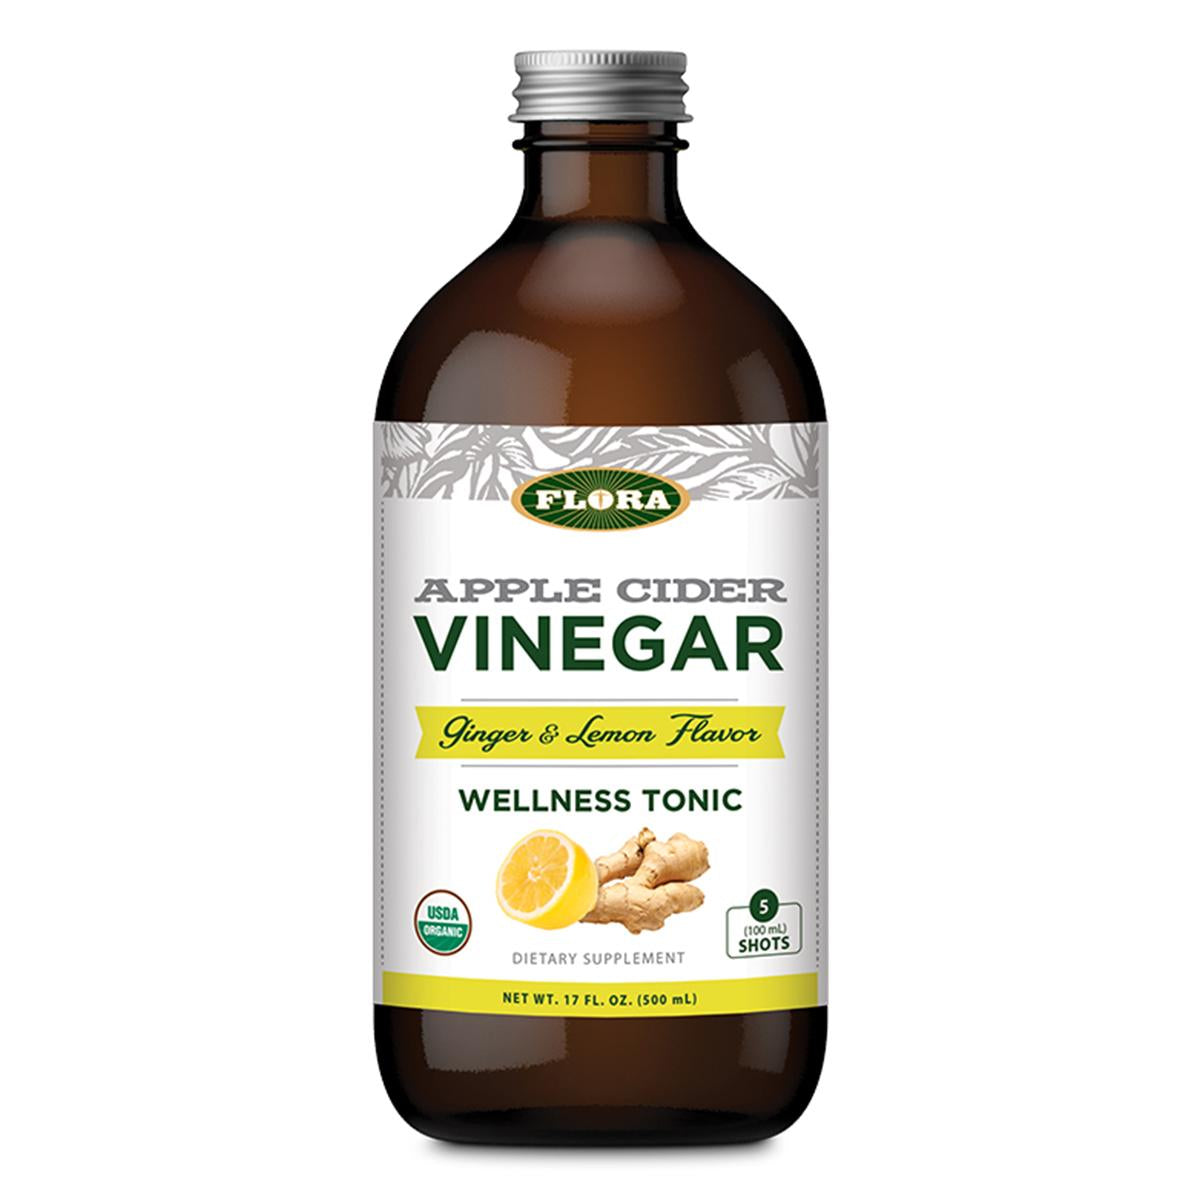 Primary image of Apple Cider Vinegar Wellness Tonic (Ginger + Lemon)